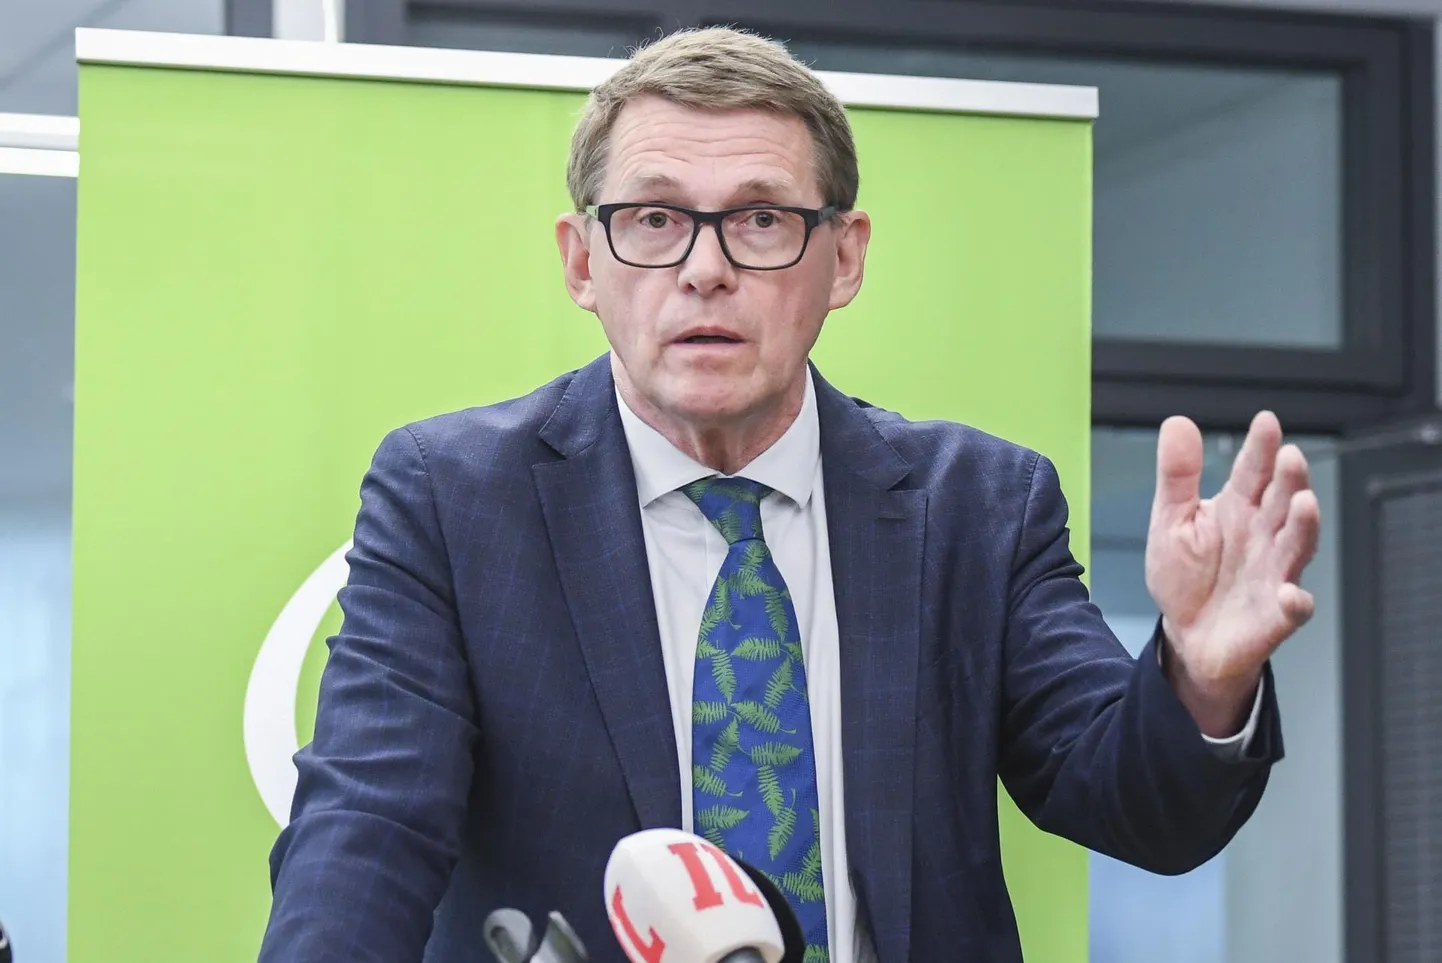 Soome rahandusministri Matti Vanhaneni kinnitusel pole praegu aeg mõelda kokkuhoiule ning võlakoorma kahandamisele, sest see kahandaks võrdsust ja sidusust Soome ühiskonnas. 